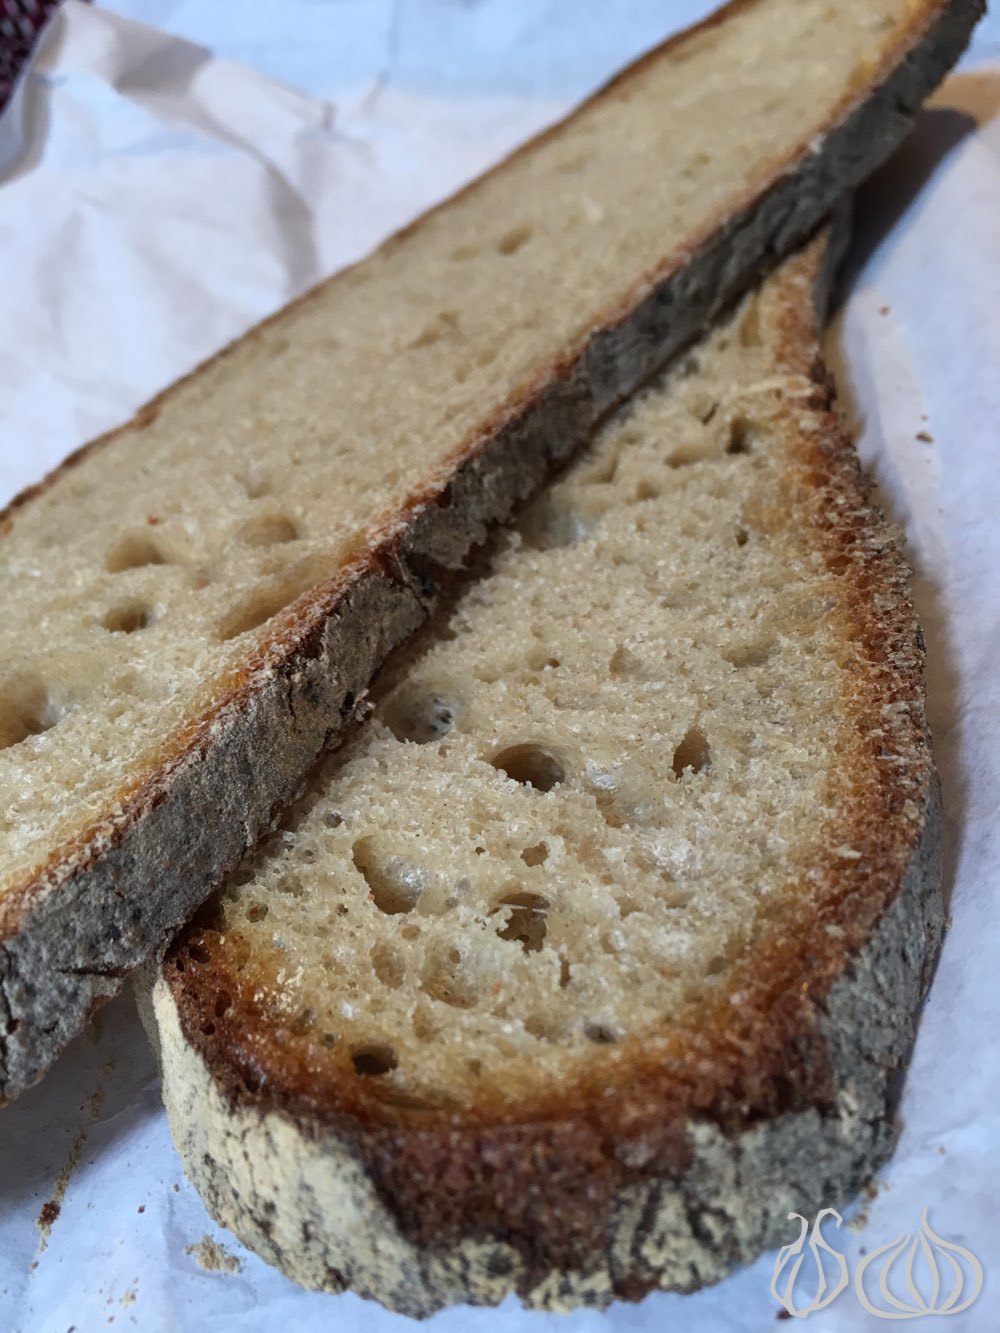 poilane-bread-paris162016-06-15-02-40-24